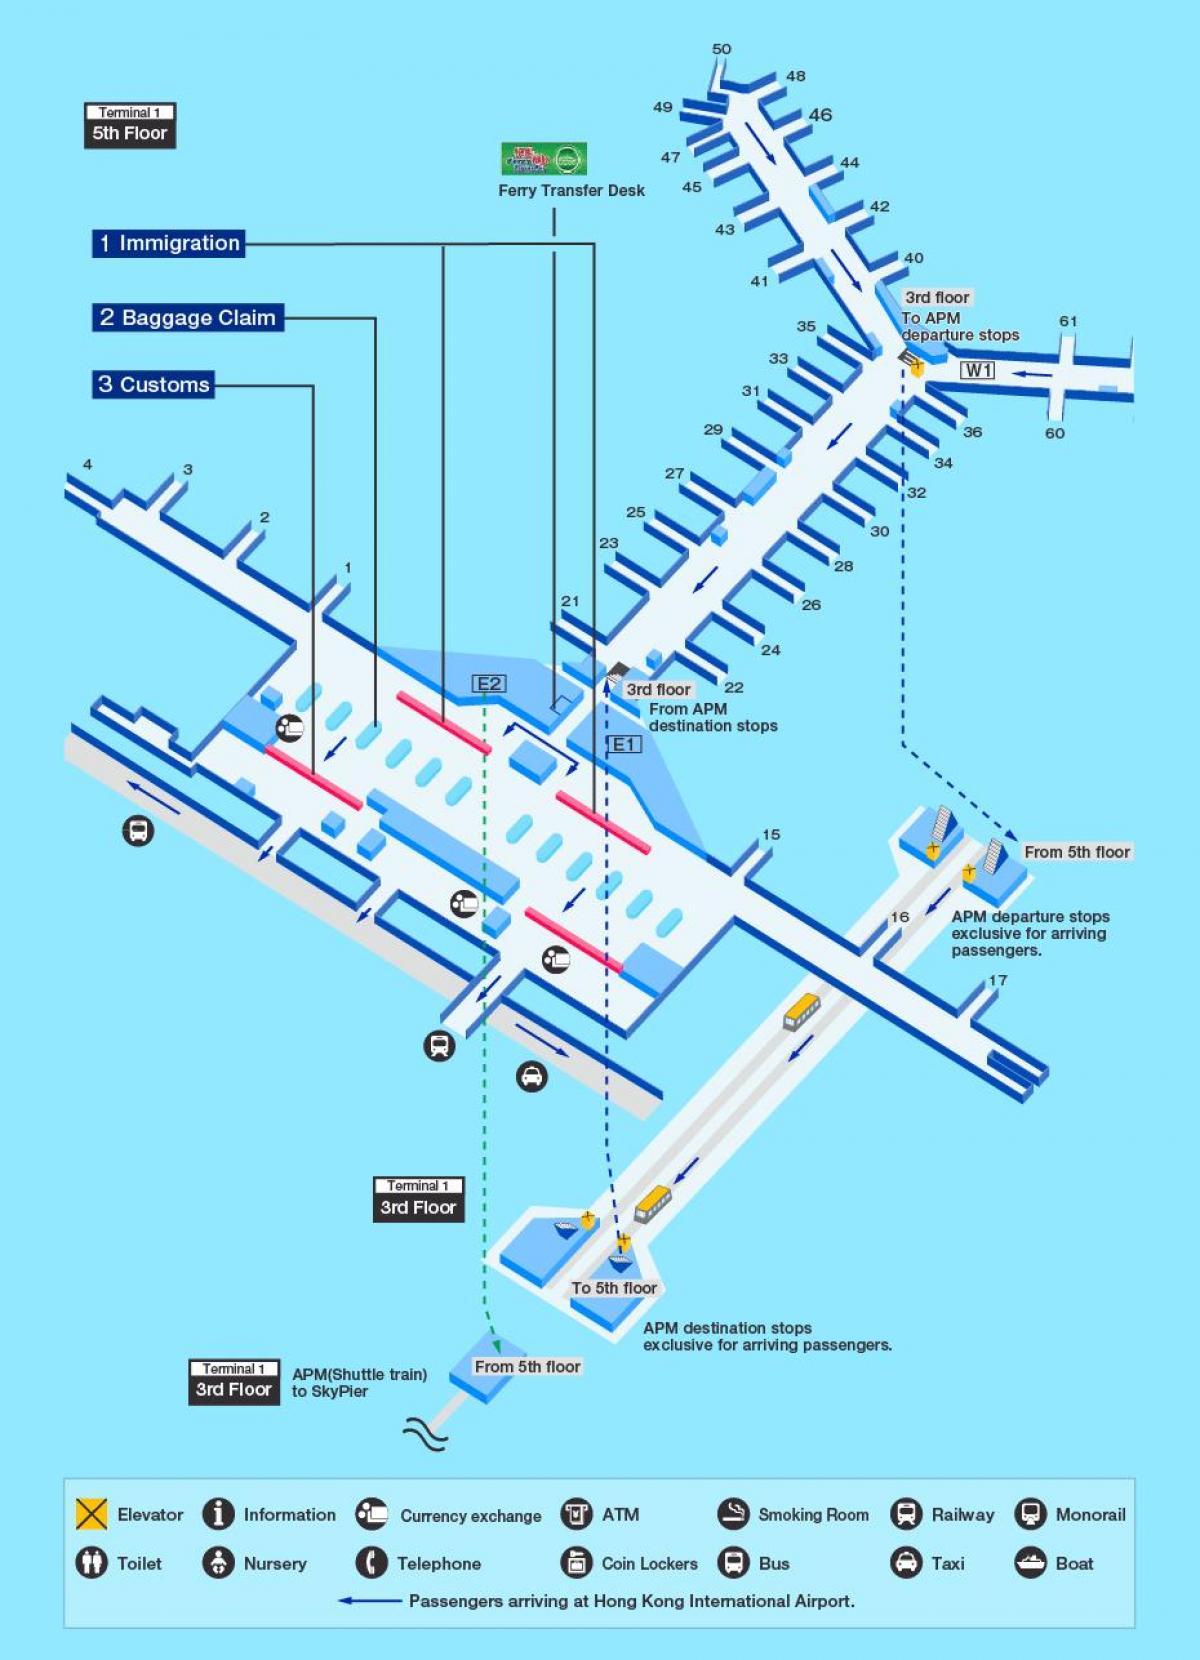 हांगकांग हवाई अड्डे के गेट के नक्शे